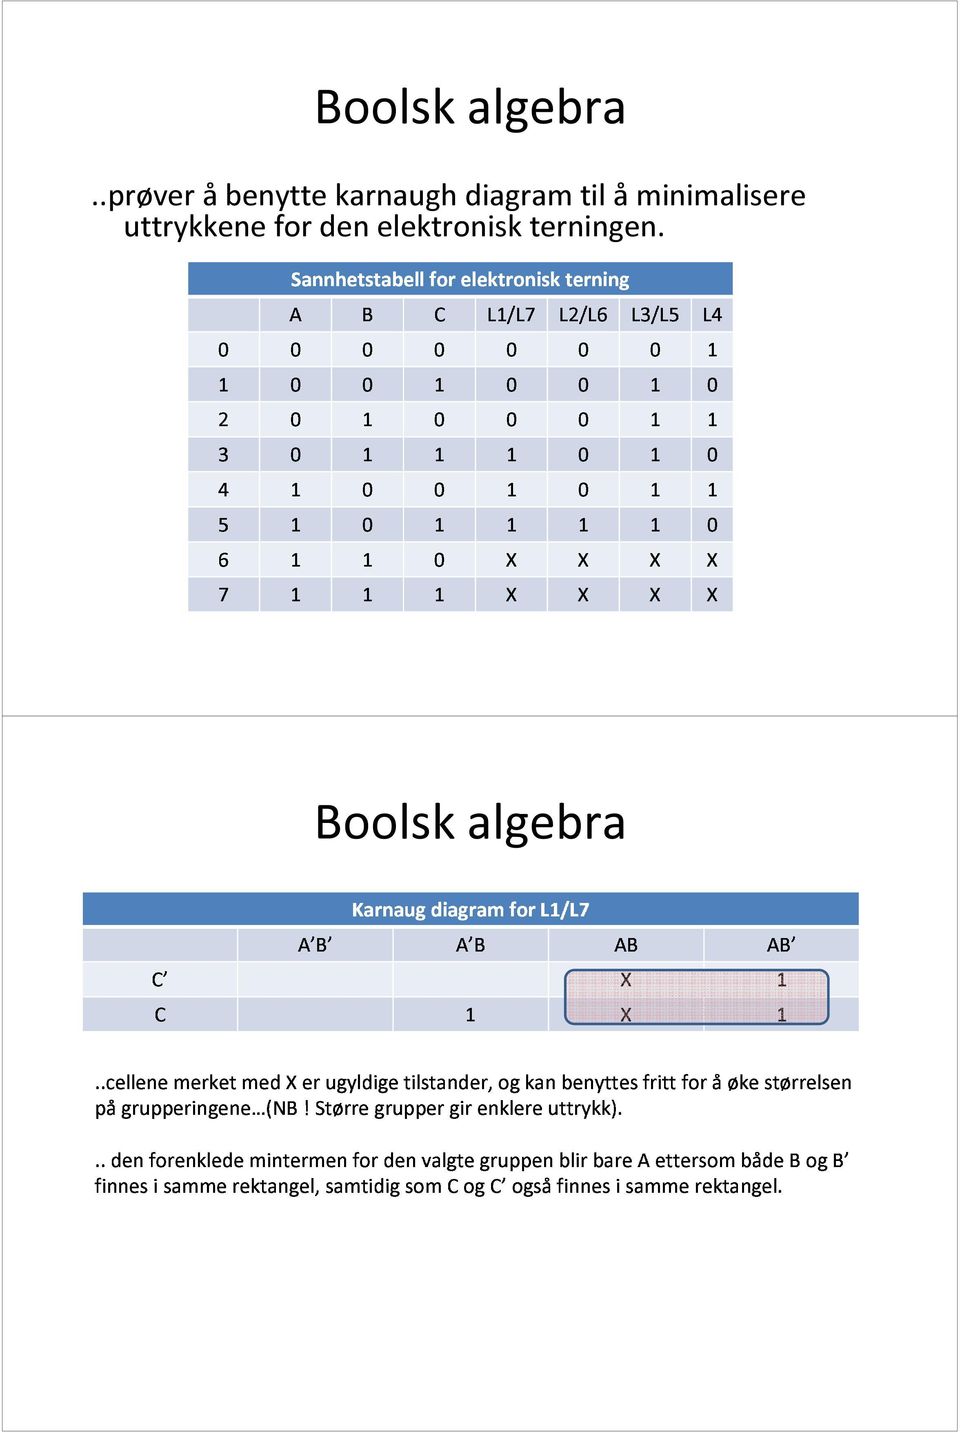 A B Karnaug diagram A Bfor L1/L7AB AB Boolsk algebra..cellene pågrupperingene (NB finnes den forenklede i samme merket rektangel, med mintermen X!